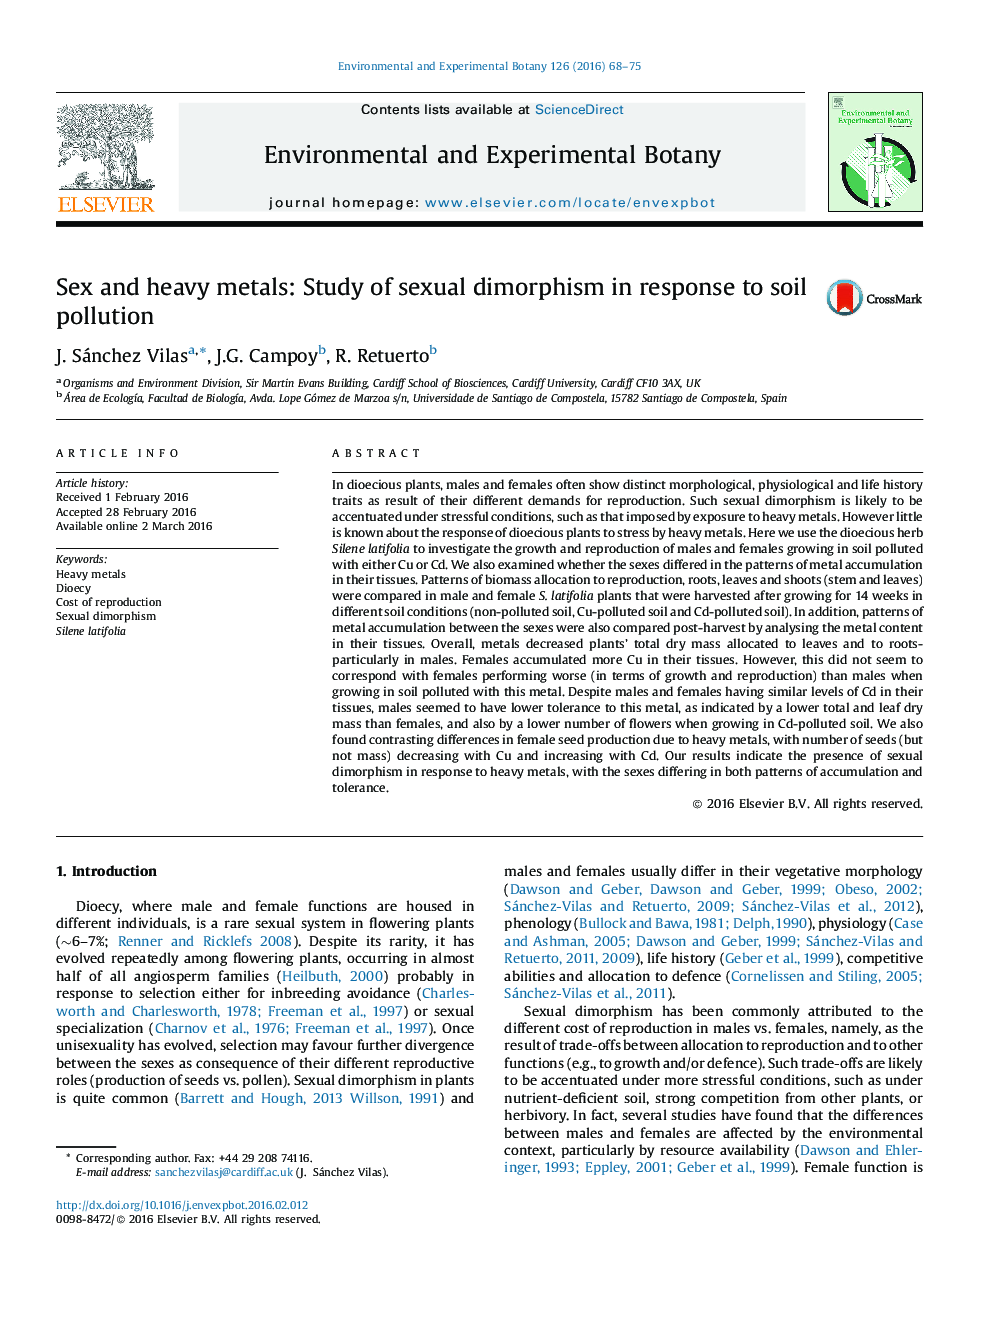 سکس و فلزات سنگین: مطالعه دیمورفیسم جنسی در پاسخ به آلودگی خاک 